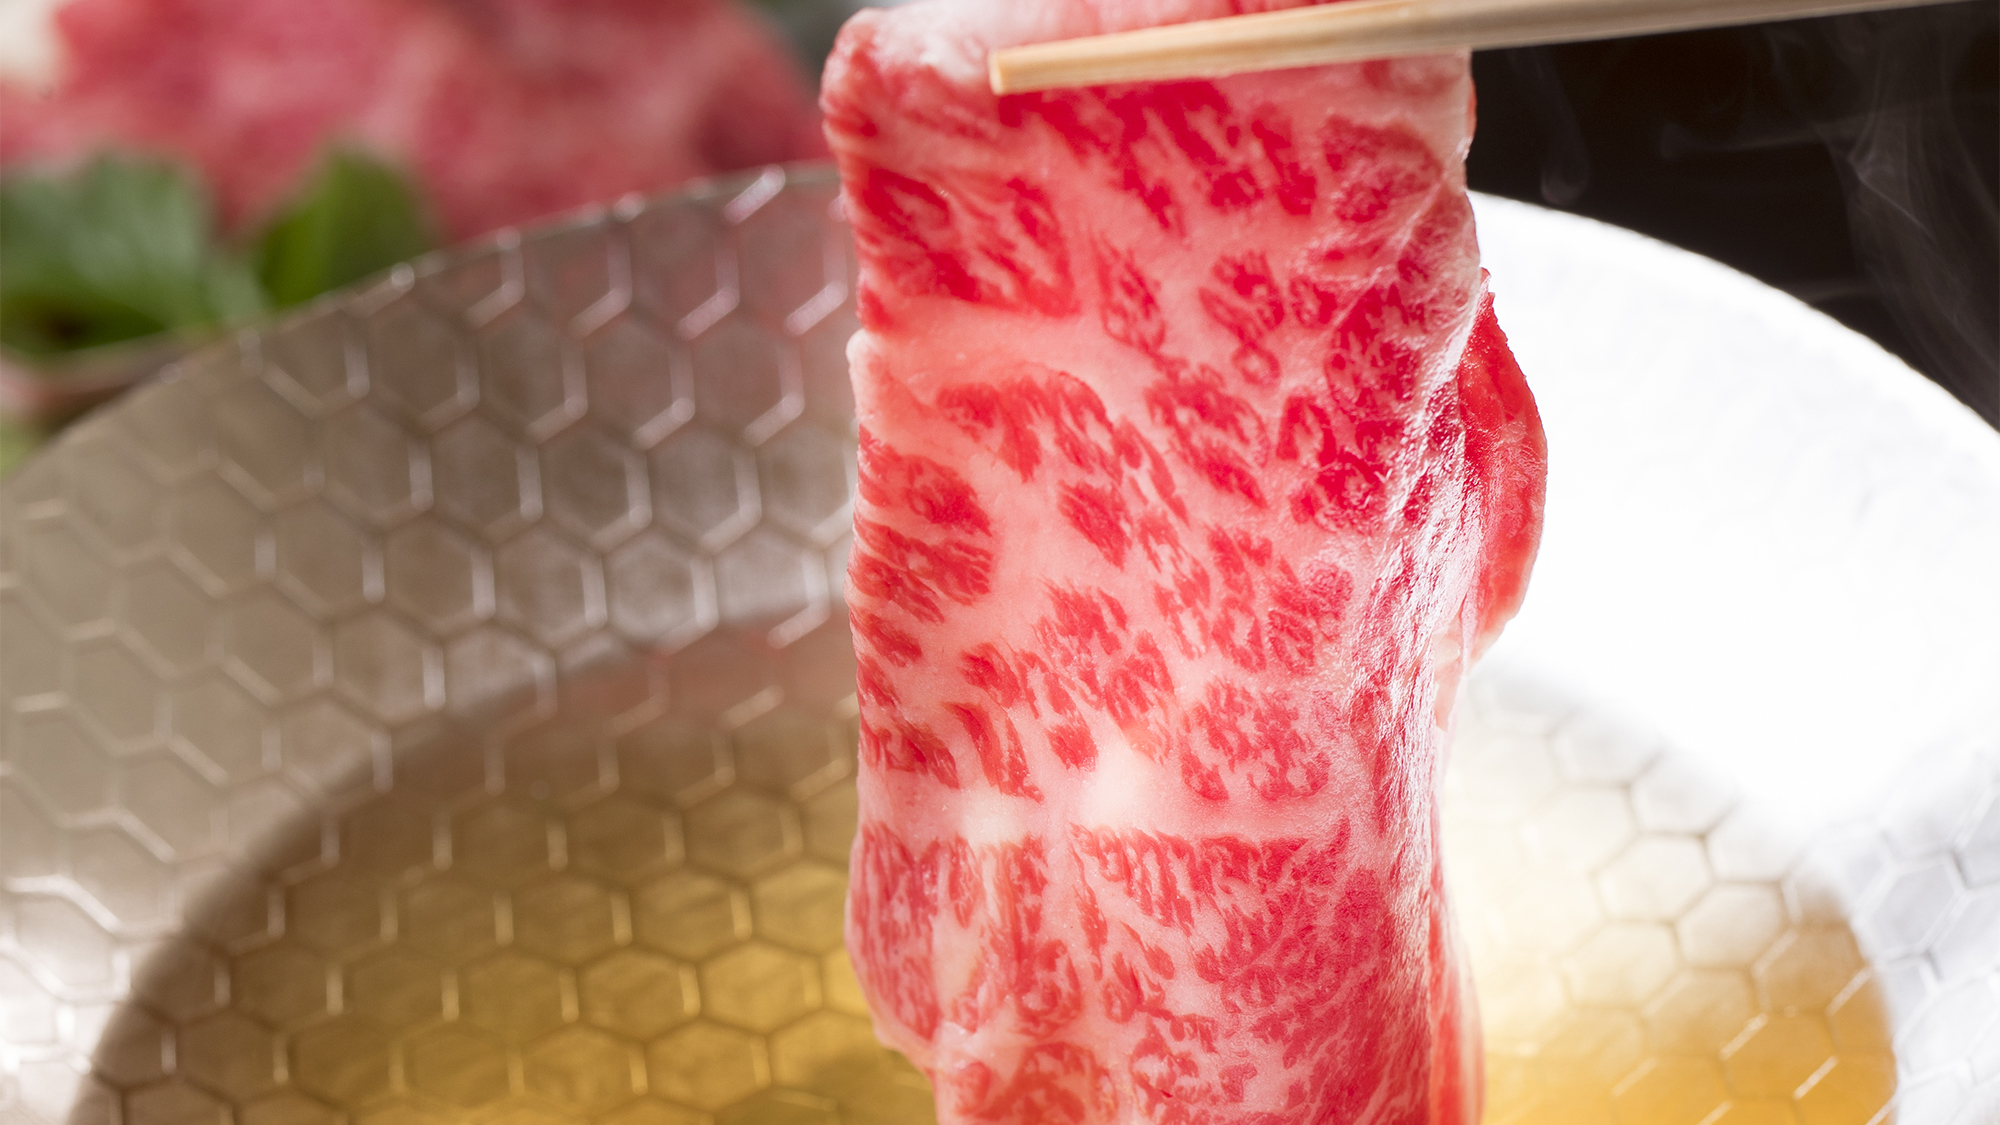 豊潤な旨み溢れる神戸牛をしゃぶしゃぶで。とろける食感とともにまろやかで上品な風味をご堪能下さい